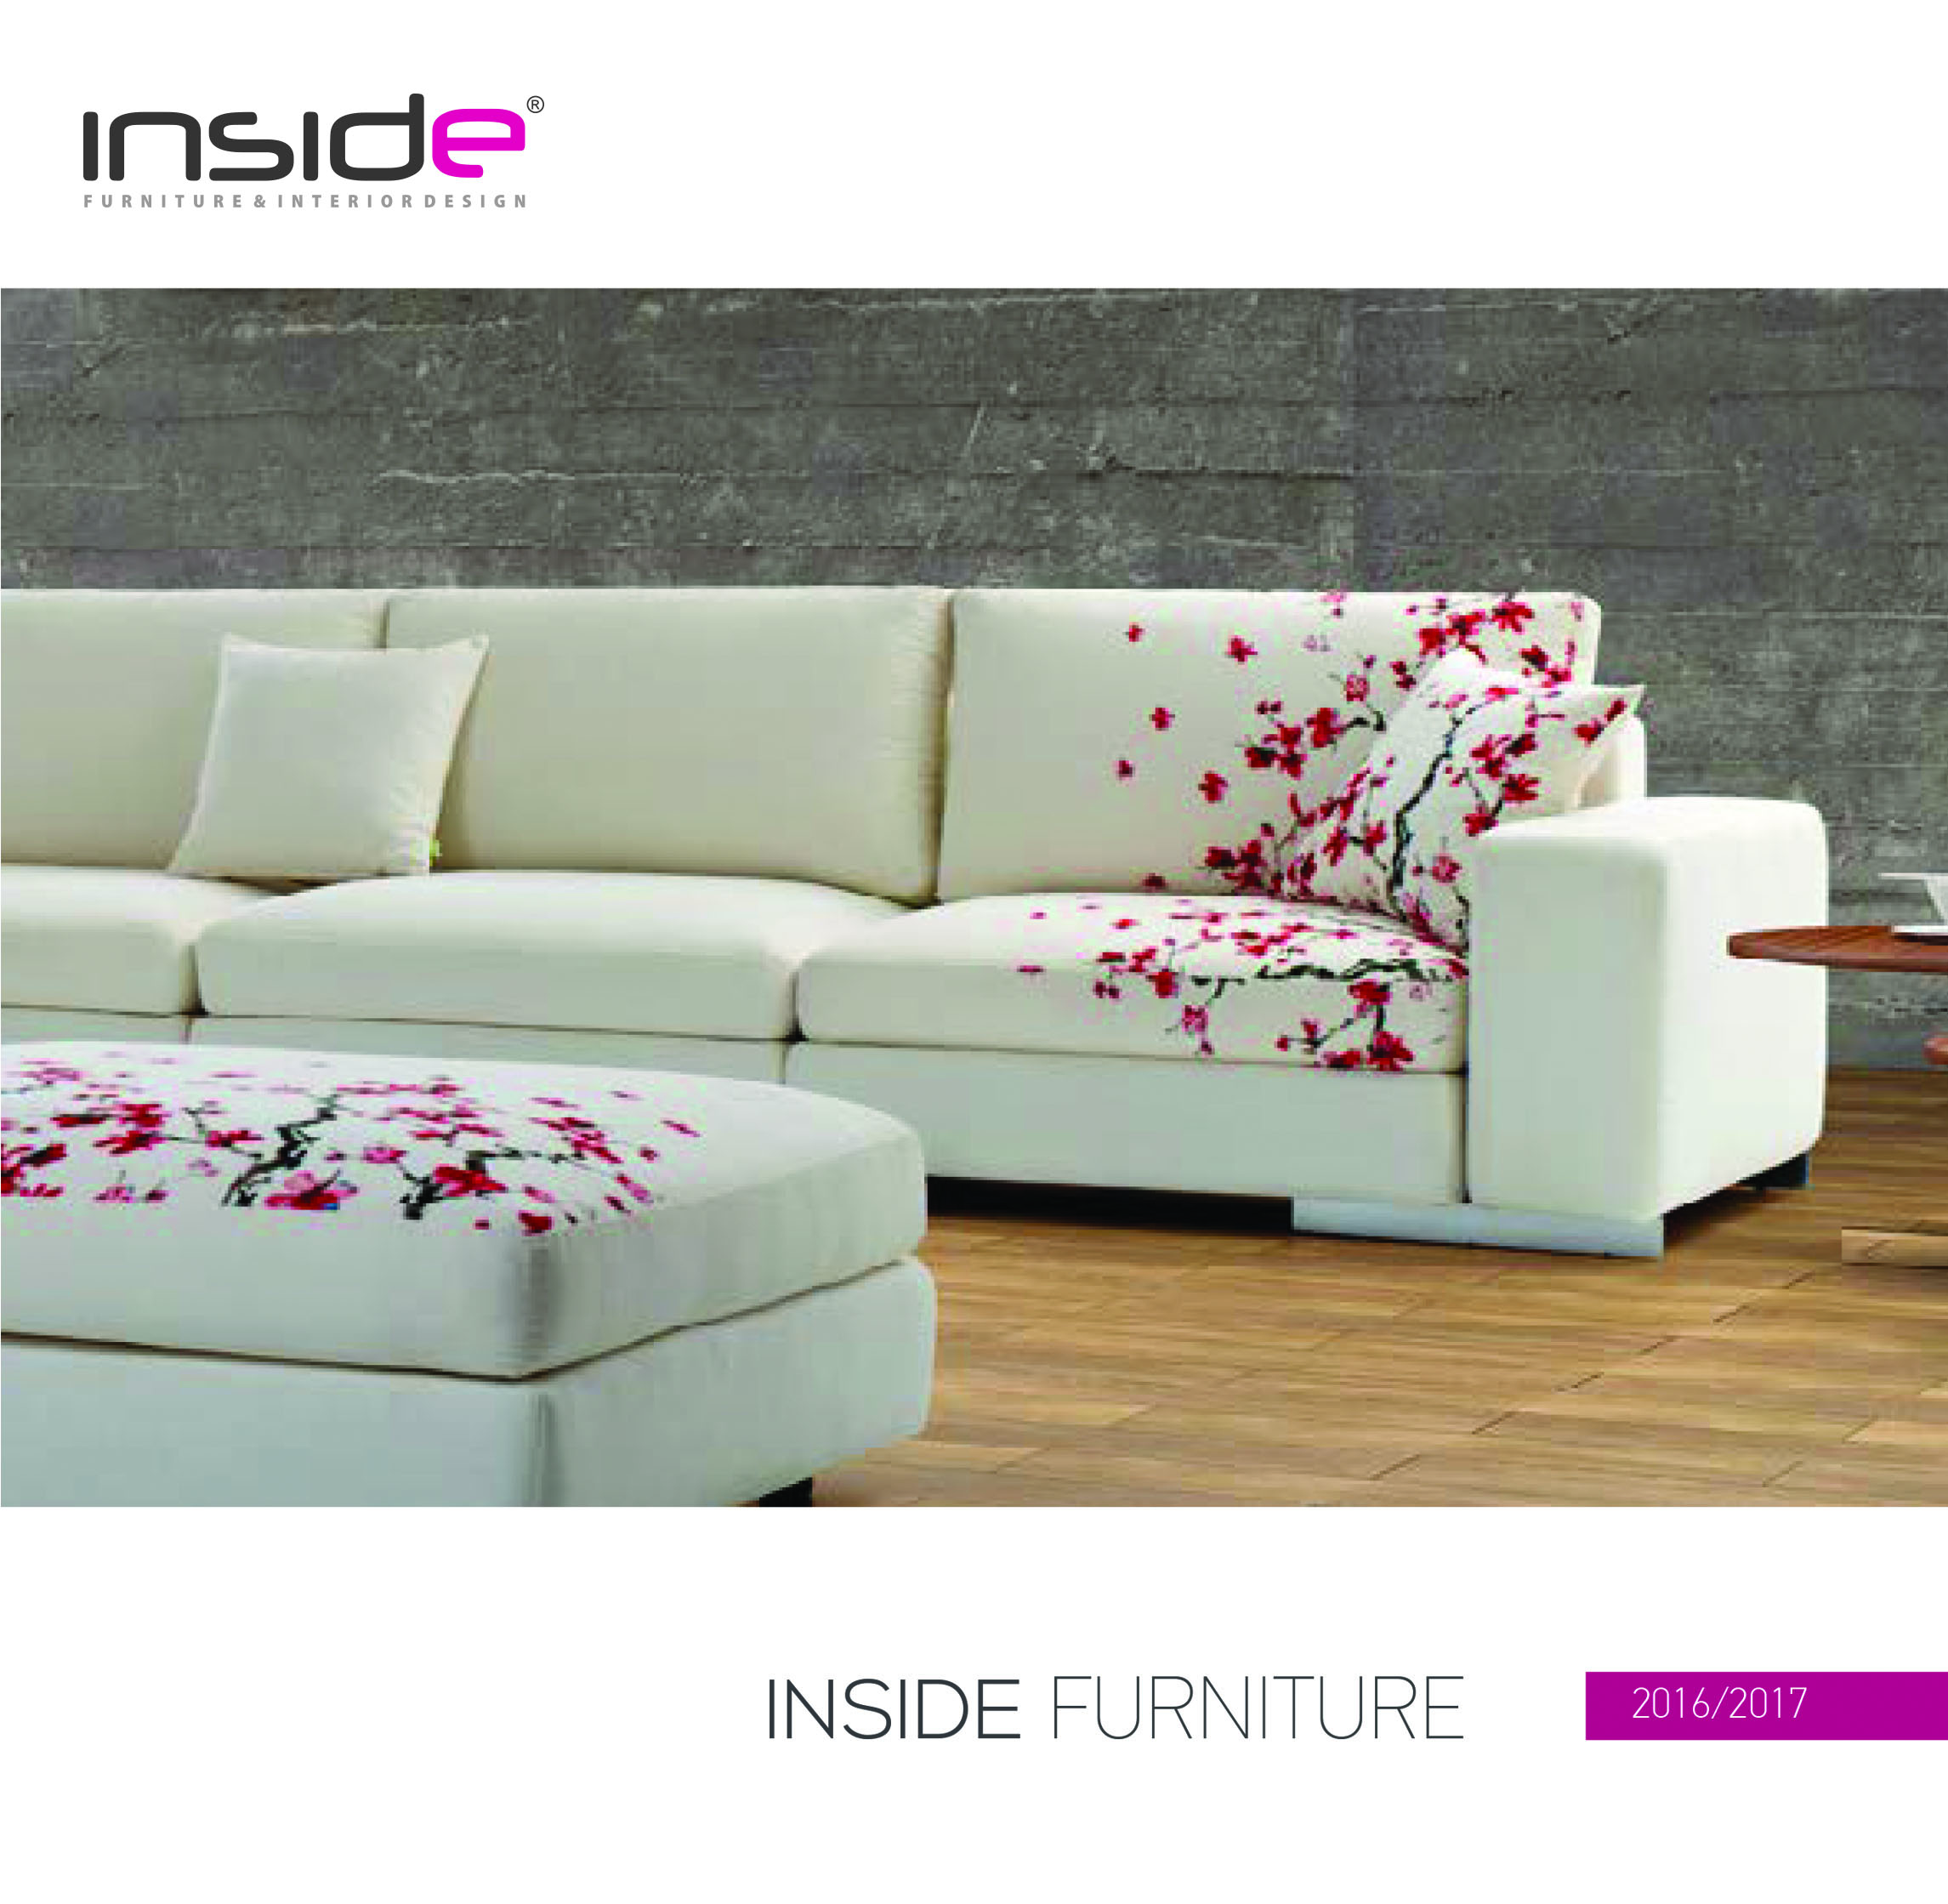 Katalog - Inside Furniture